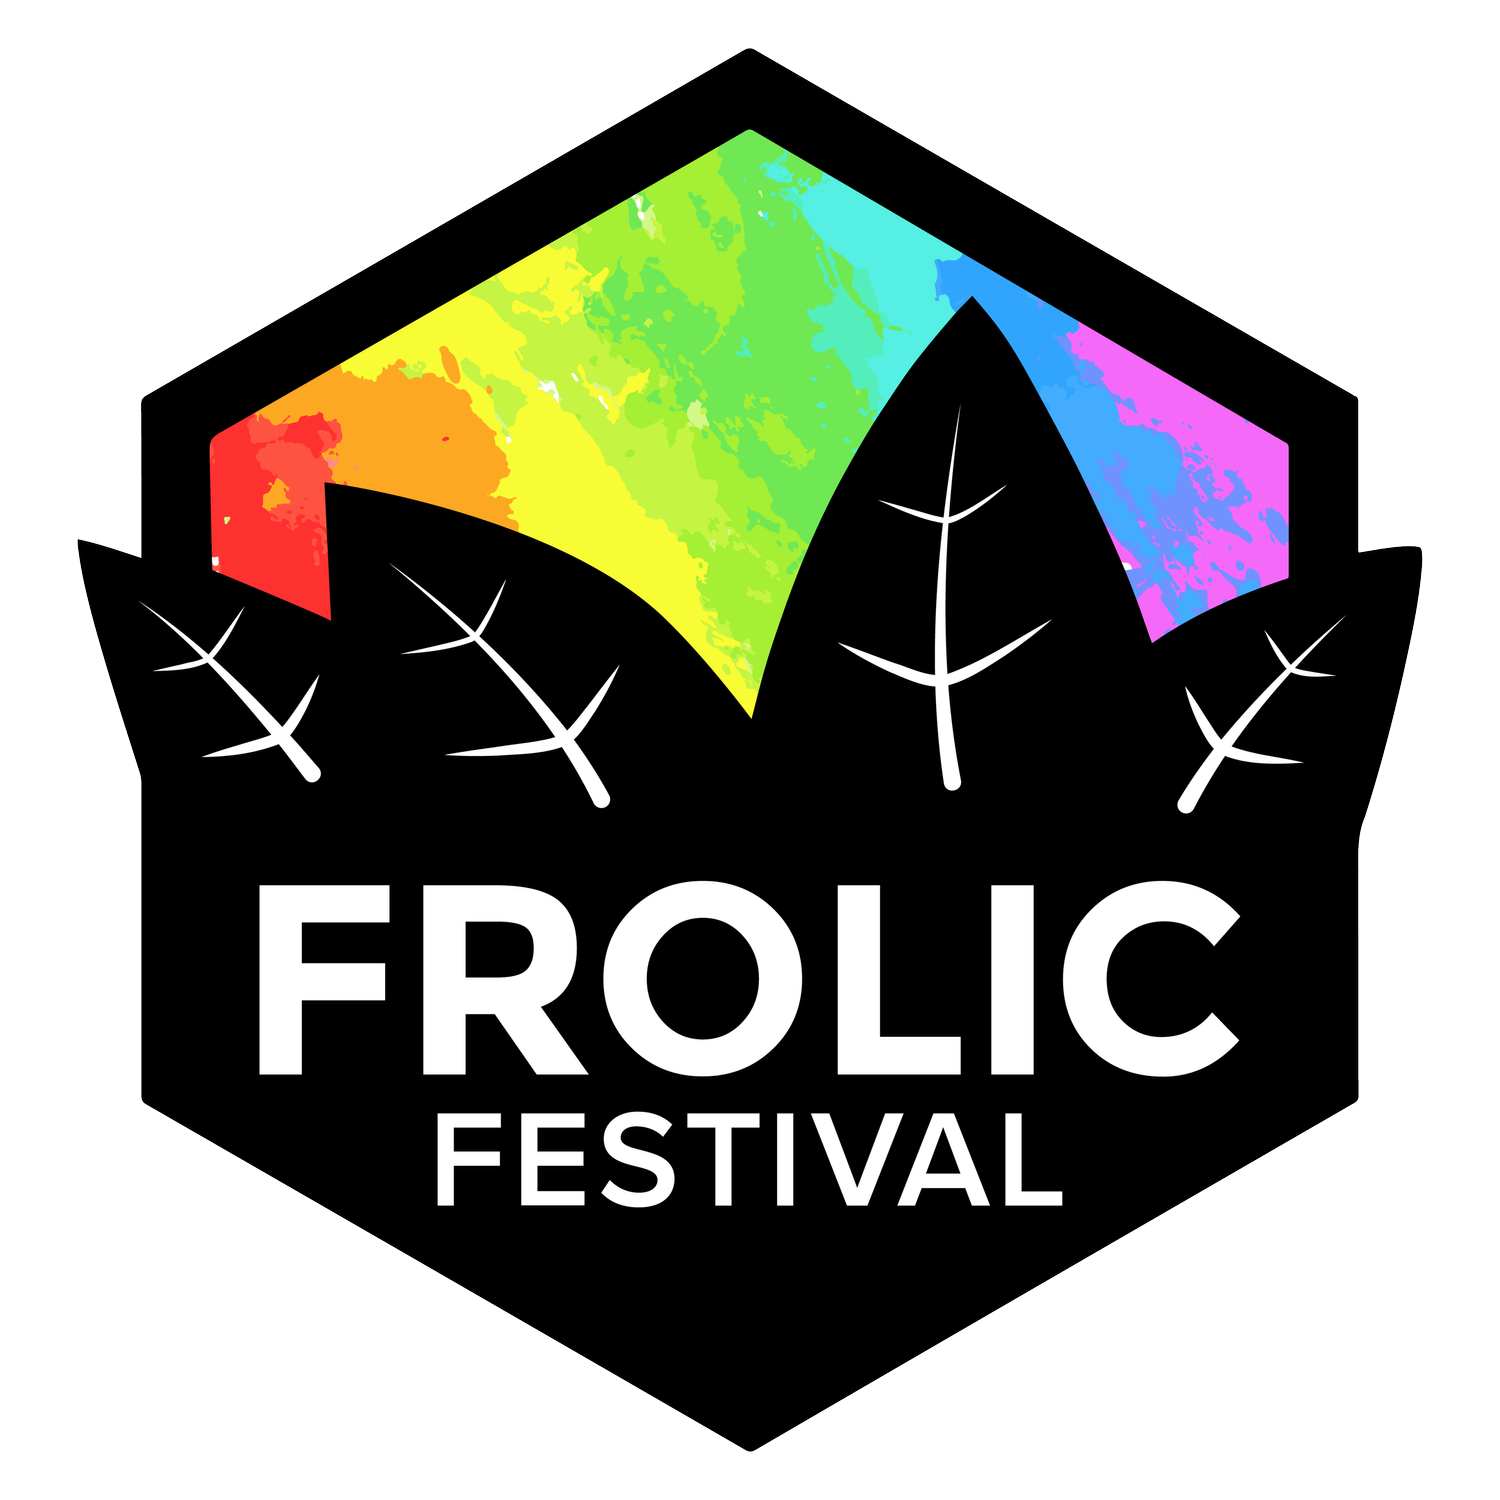 Ballarat Frolic Festival